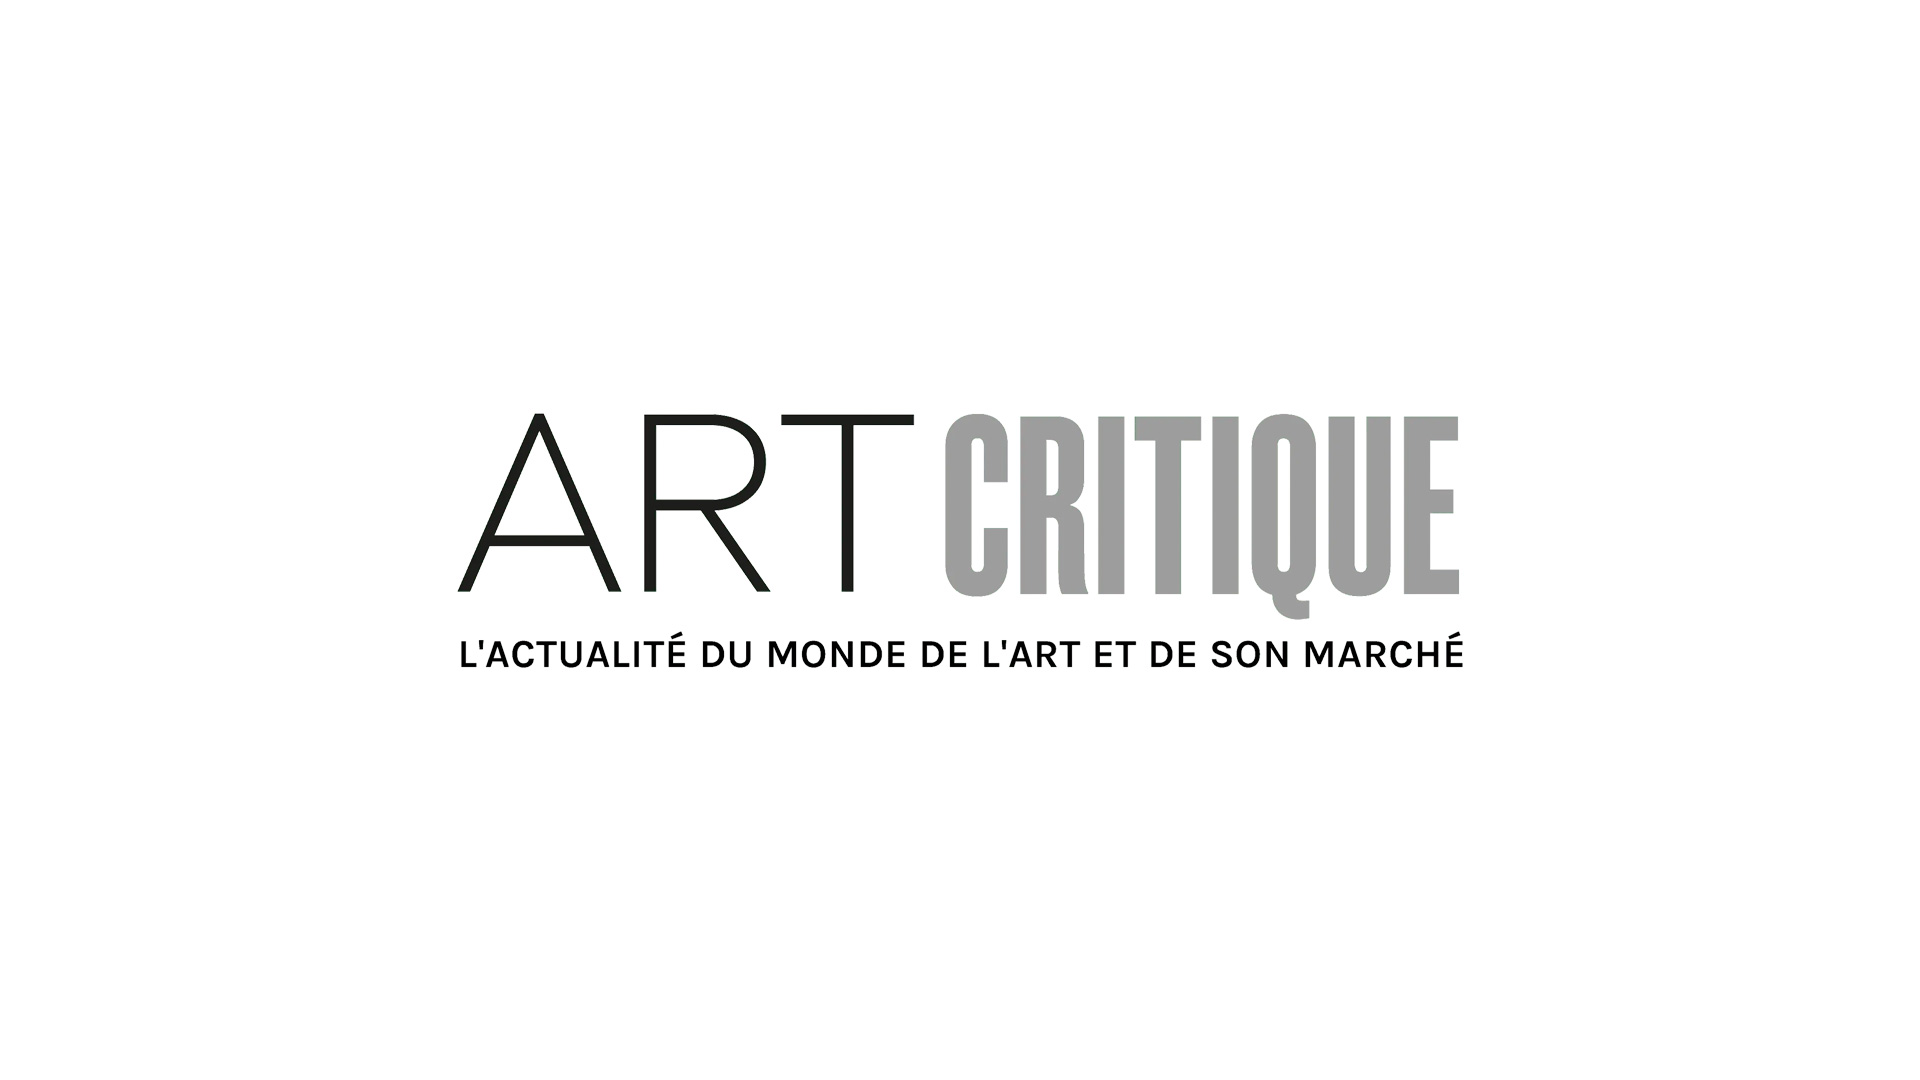 Édouard Manet, Au conservatoire. Source : Wikimedia Commons.